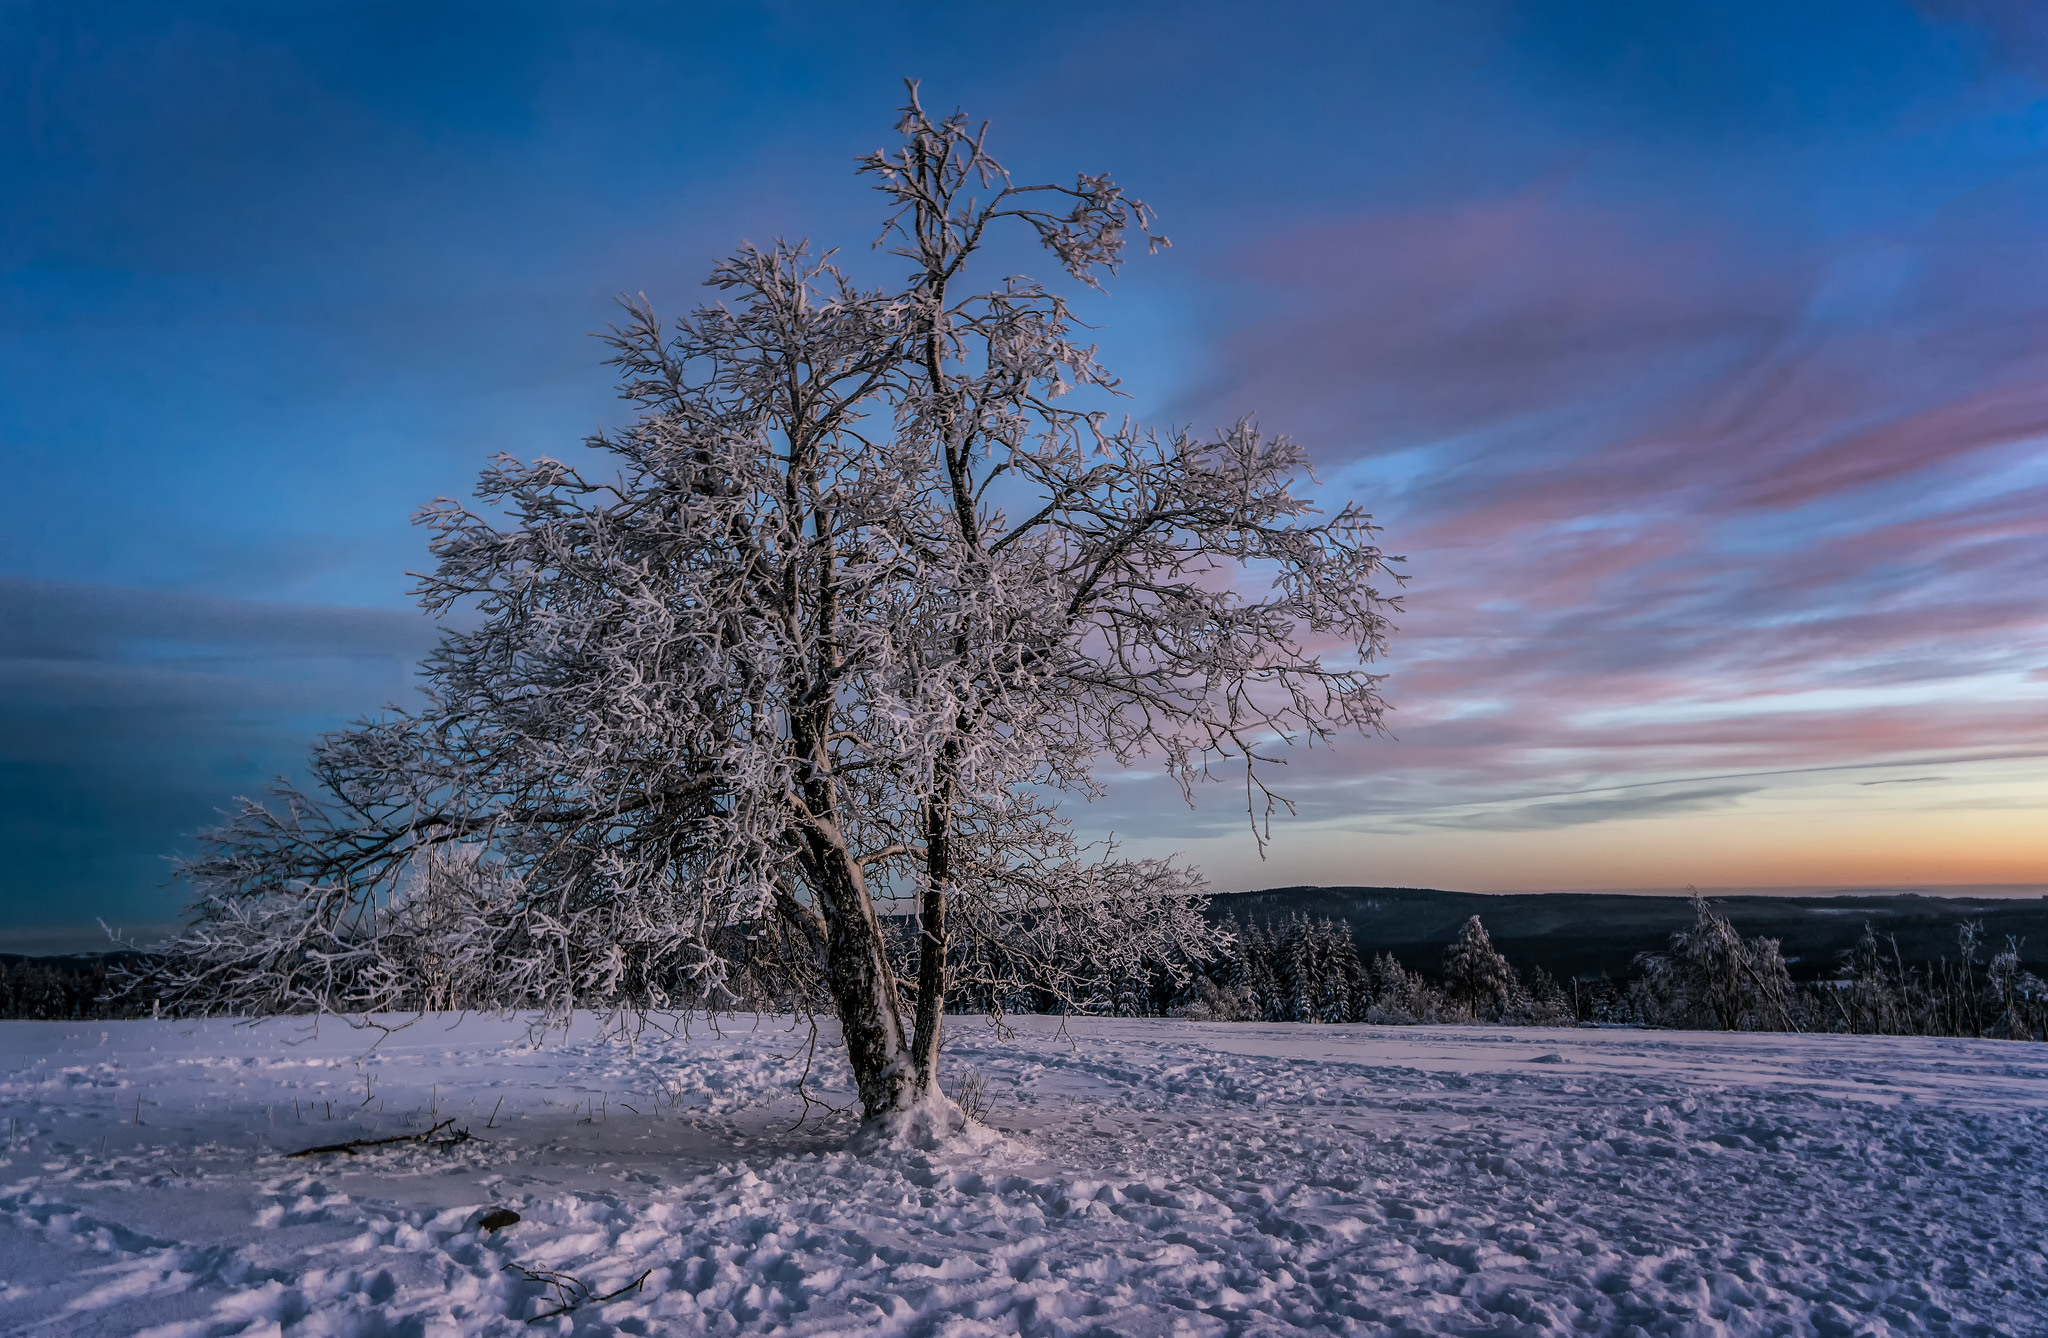 Скачать обои бесплатно Зима, Деревья, Снег, Дерево, Земля/природа картинка на рабочий стол ПК